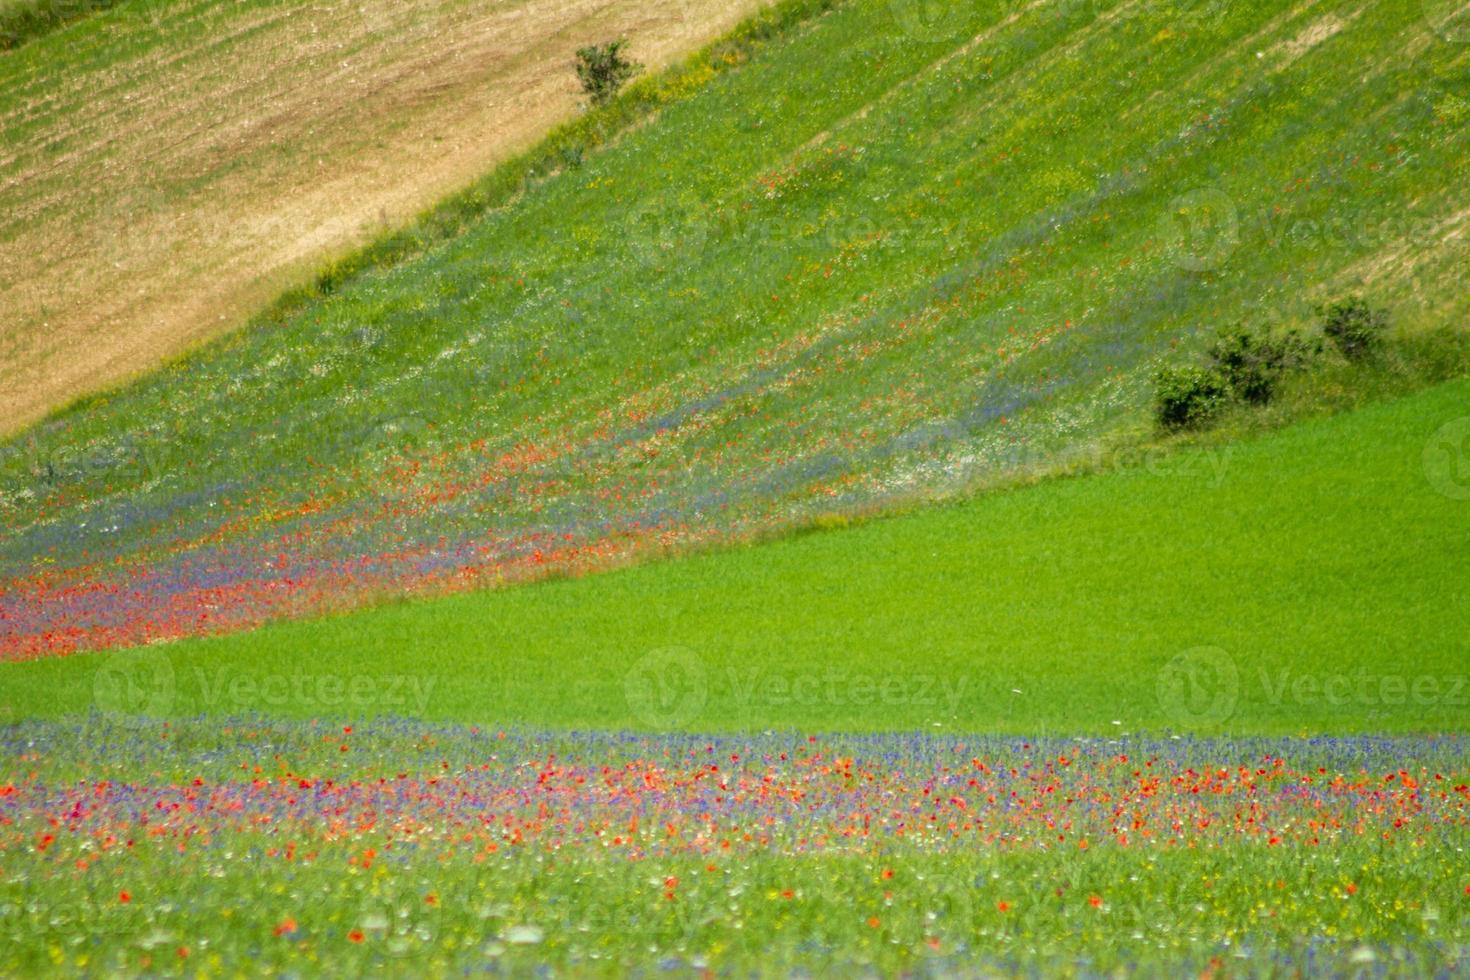 castelluccio di norcia e la sua natura fiorita foto